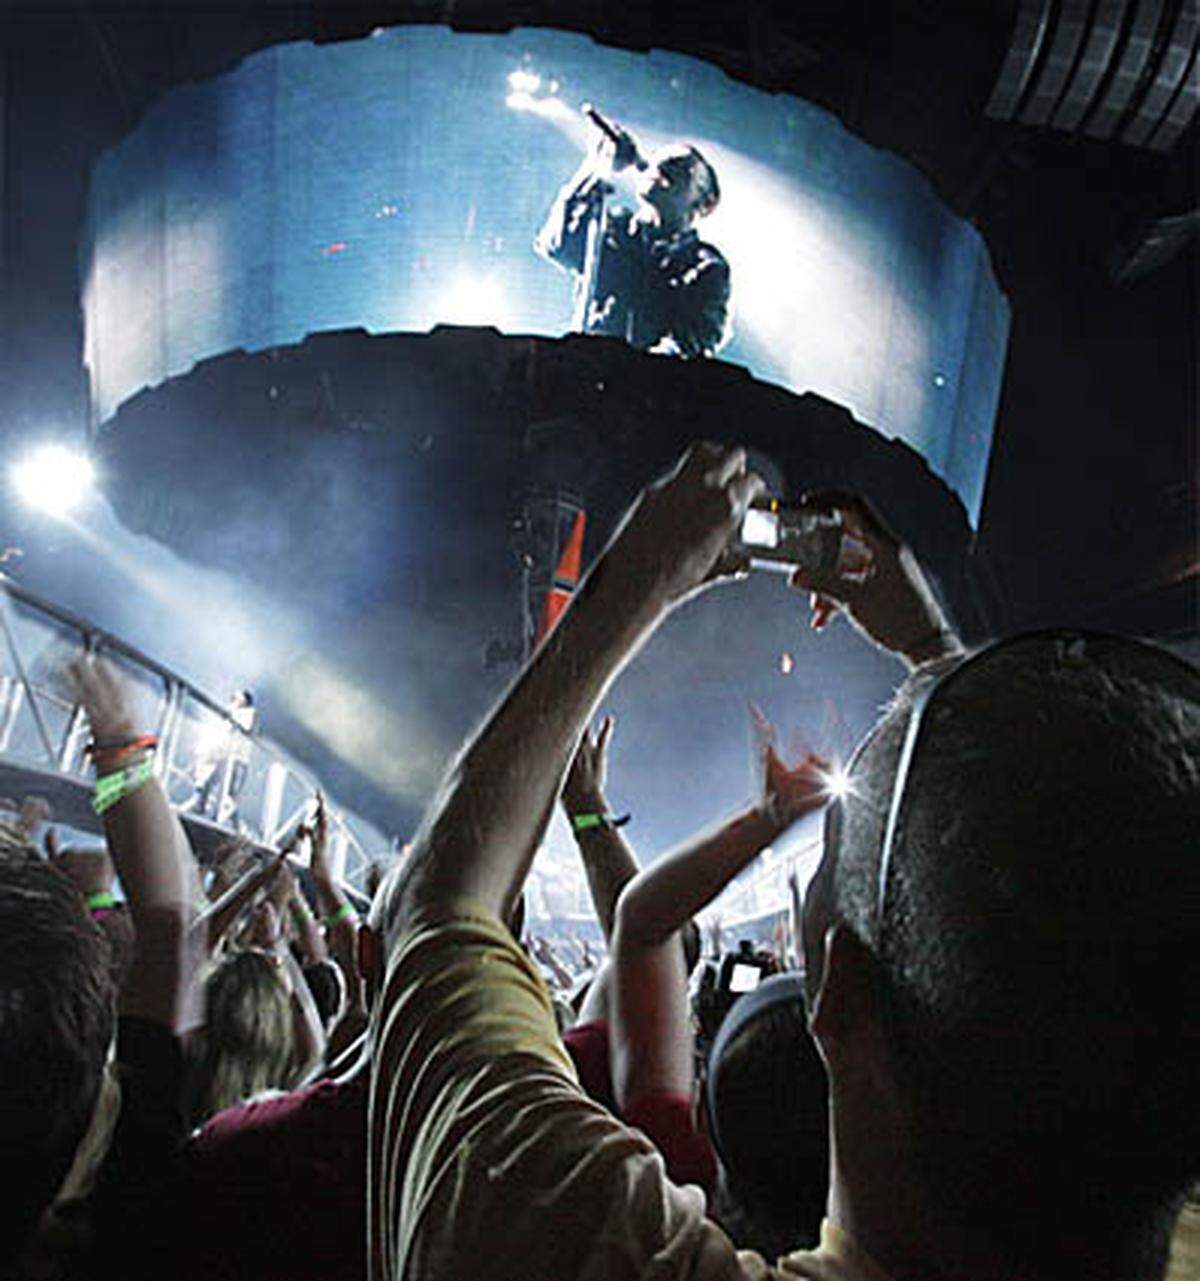 Die irische Popband U2  haben einen Rekord erzielt: Ihre "360-Grad"-Tour war die bisher erfolgreichste der Musikgeschichte. Das Einspielergebnis von 736 Millionen Dollar stellt die Rolling Stones mit "A Bigger Bang" (558 Millionen Dollar) in den Schatten.